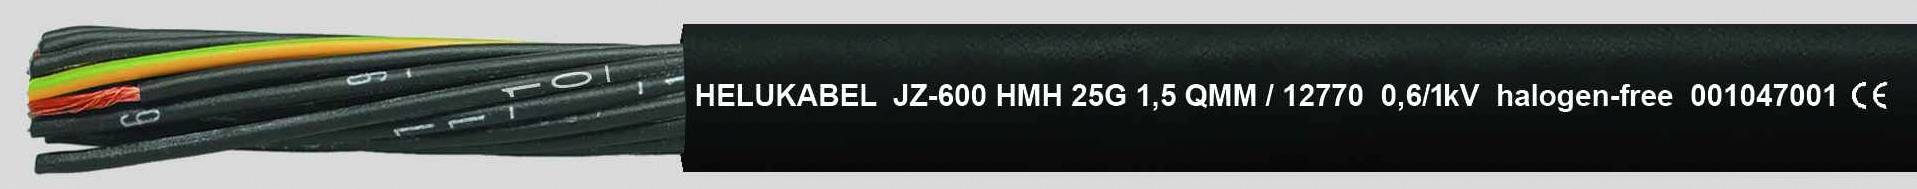 HELUKABEL JZ-600 HMH Steuerleitung 4 G 2.50 mm² Schwarz 12774-1000 1000 m